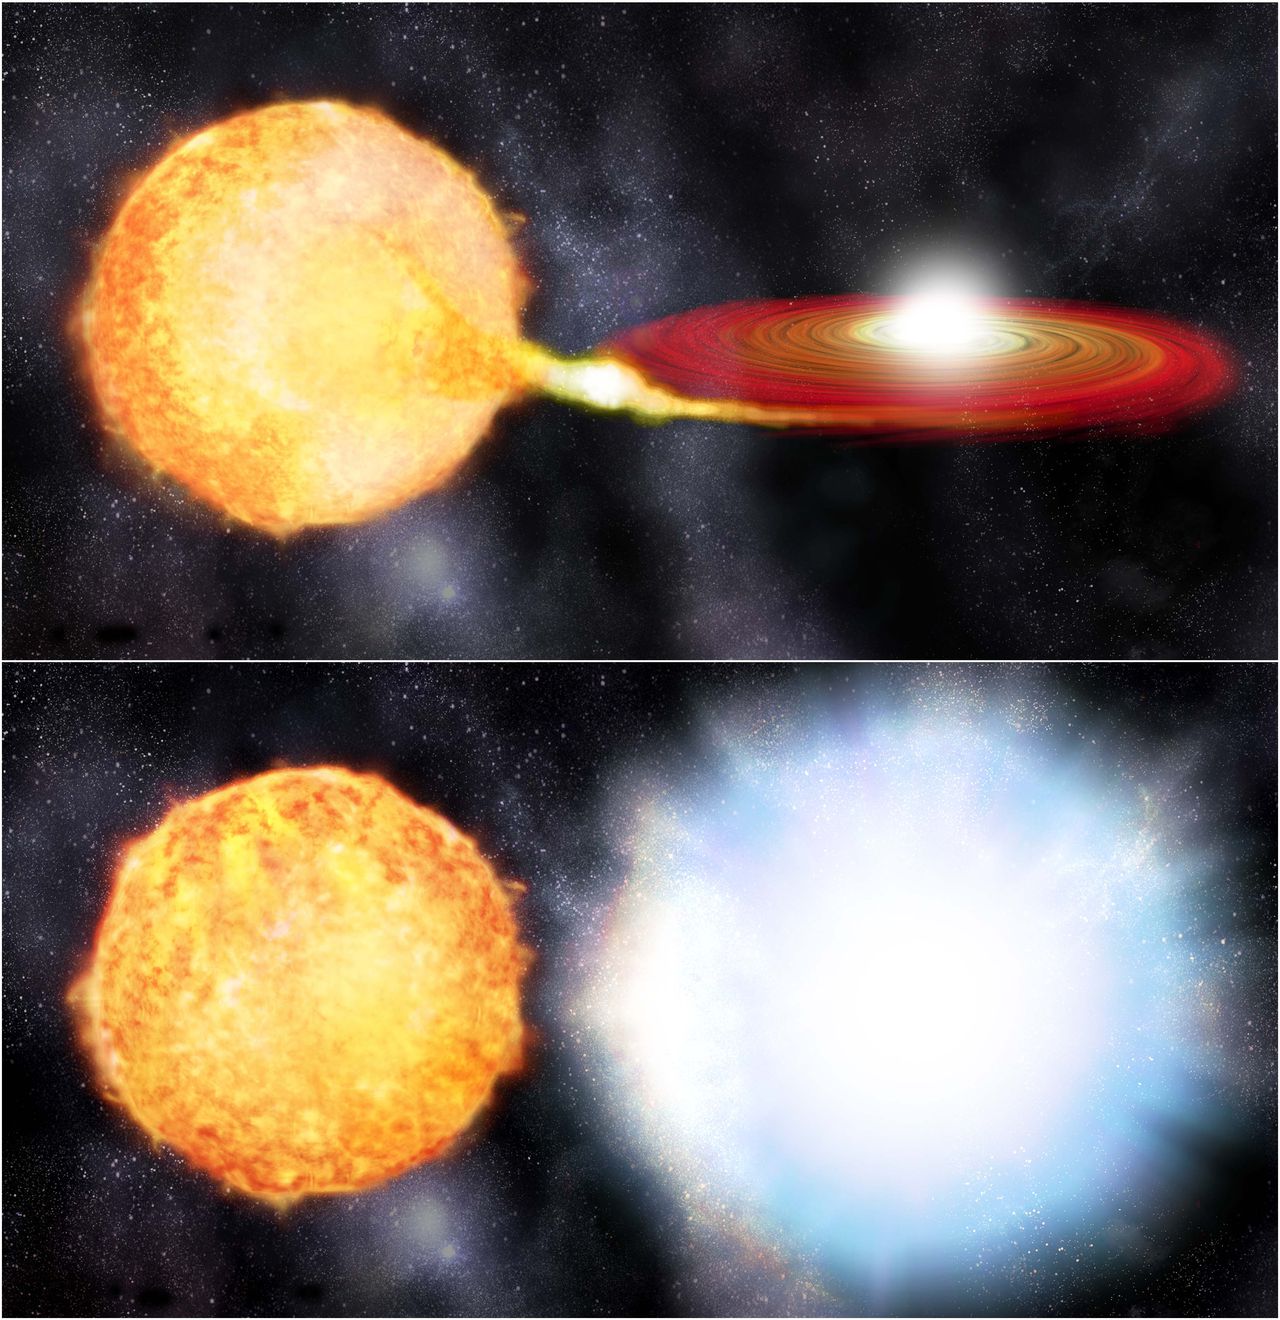 Поглощение белым карликом вещества соседней звезды, приводящее к взрыву сверхновой типа la. Источник изображения: www.nrc.nl